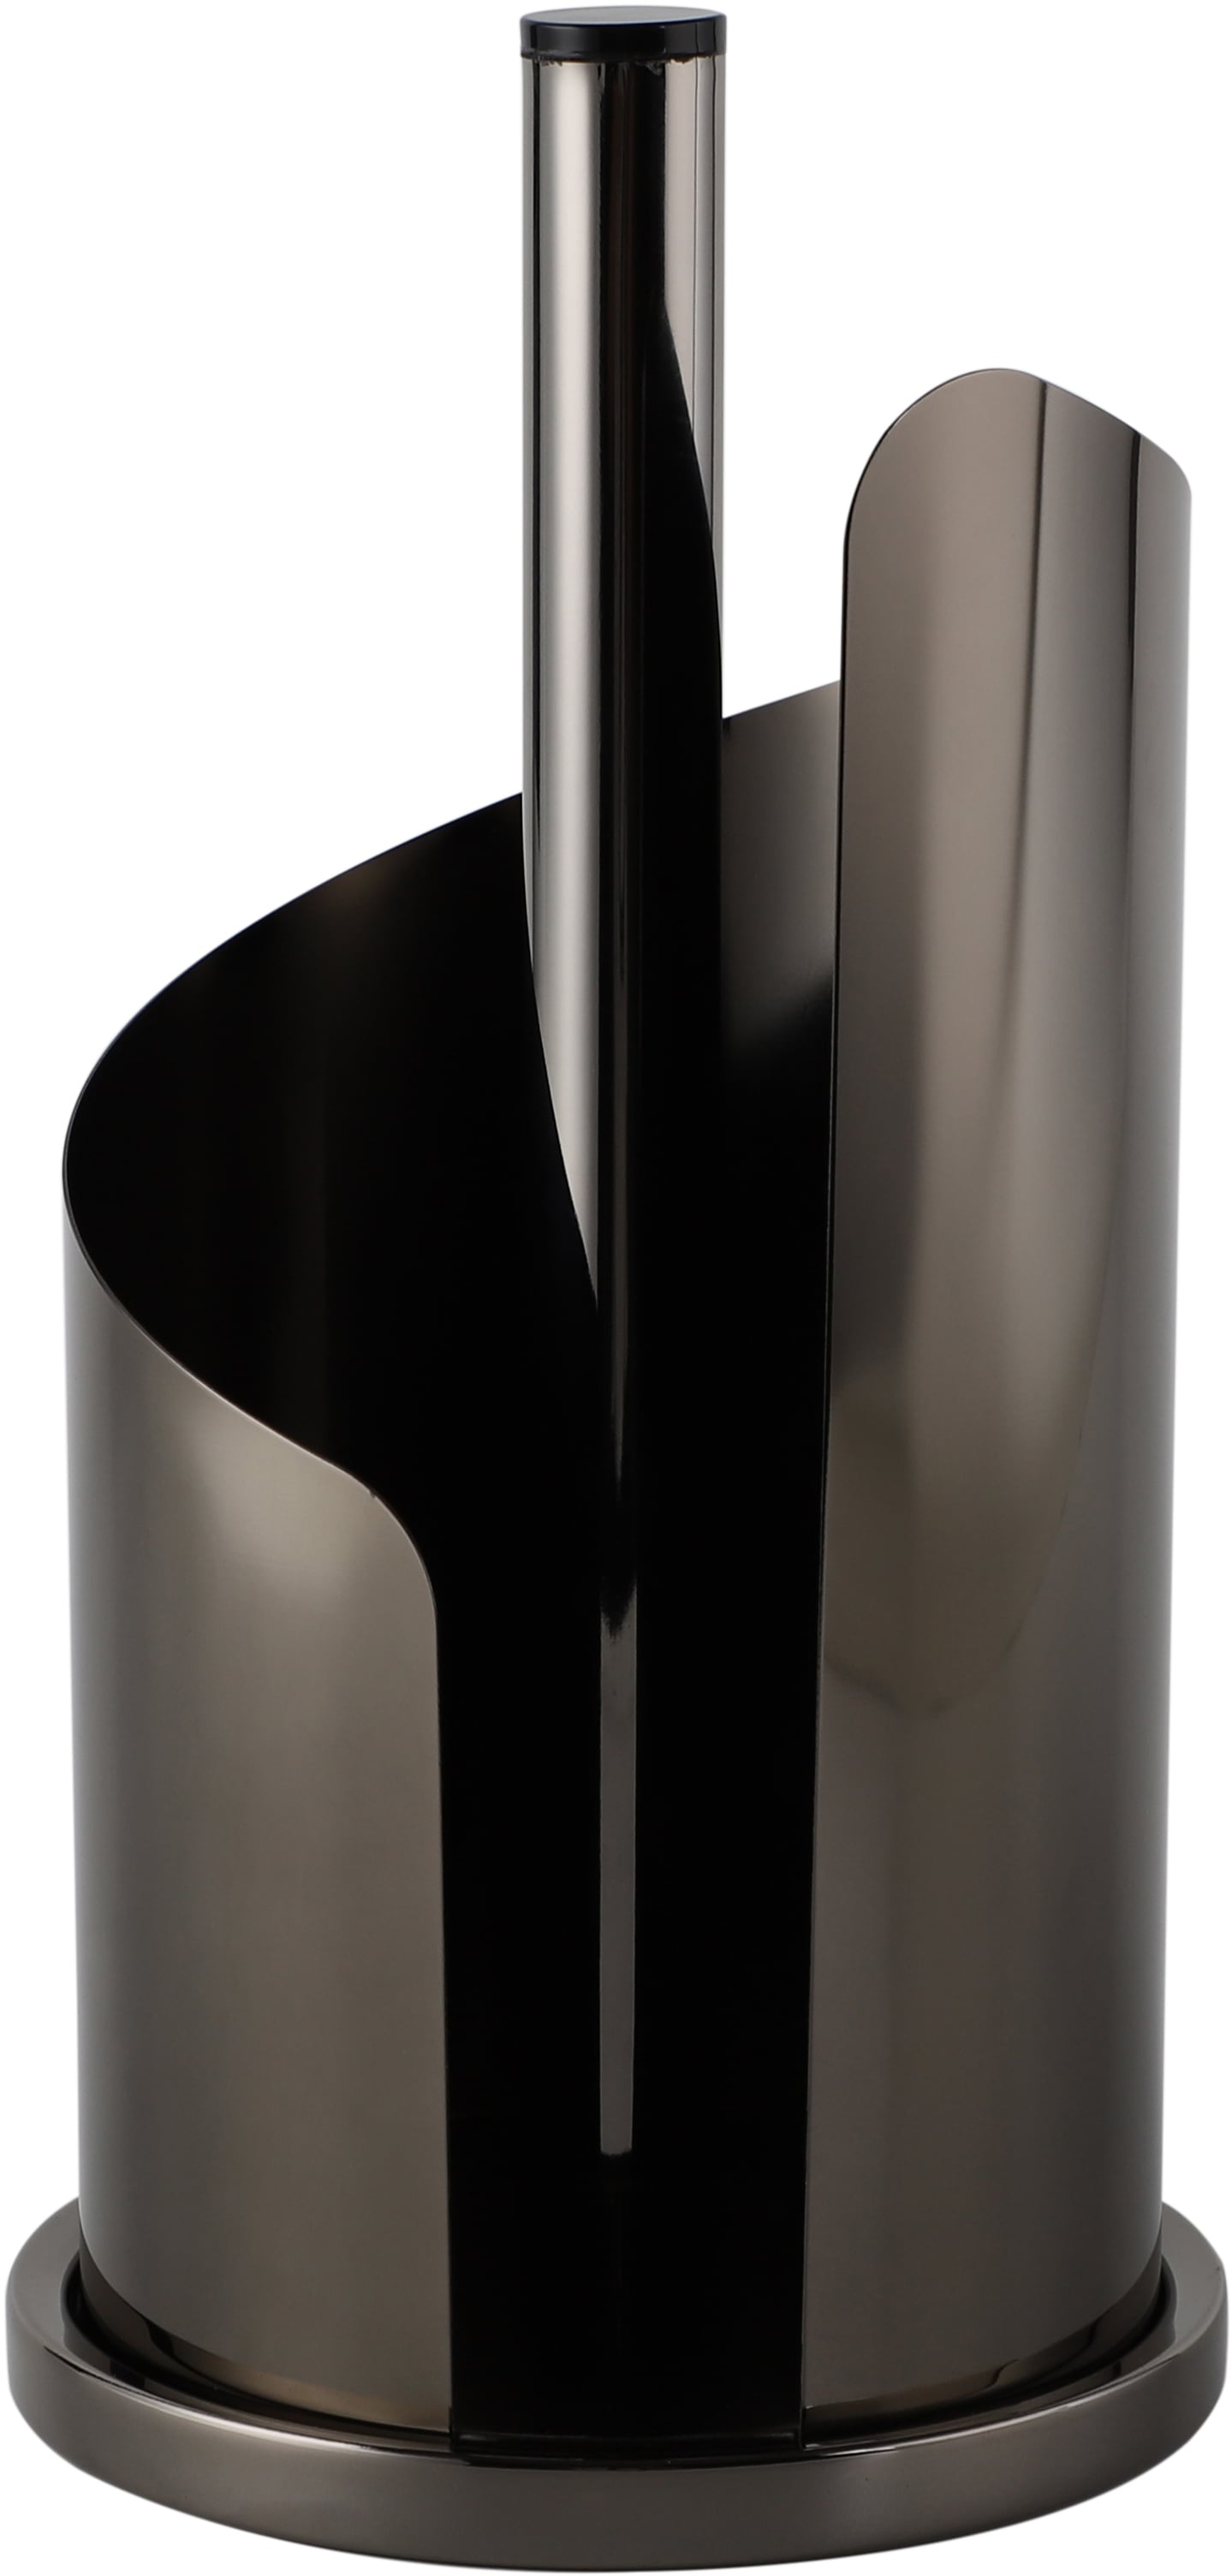 ECHTWERK Küchenrollenhalter, (1 St.), Papierrollenhalter aus Edelstahl, Rollenhalter, Stehend, 15,5 x 33 cm